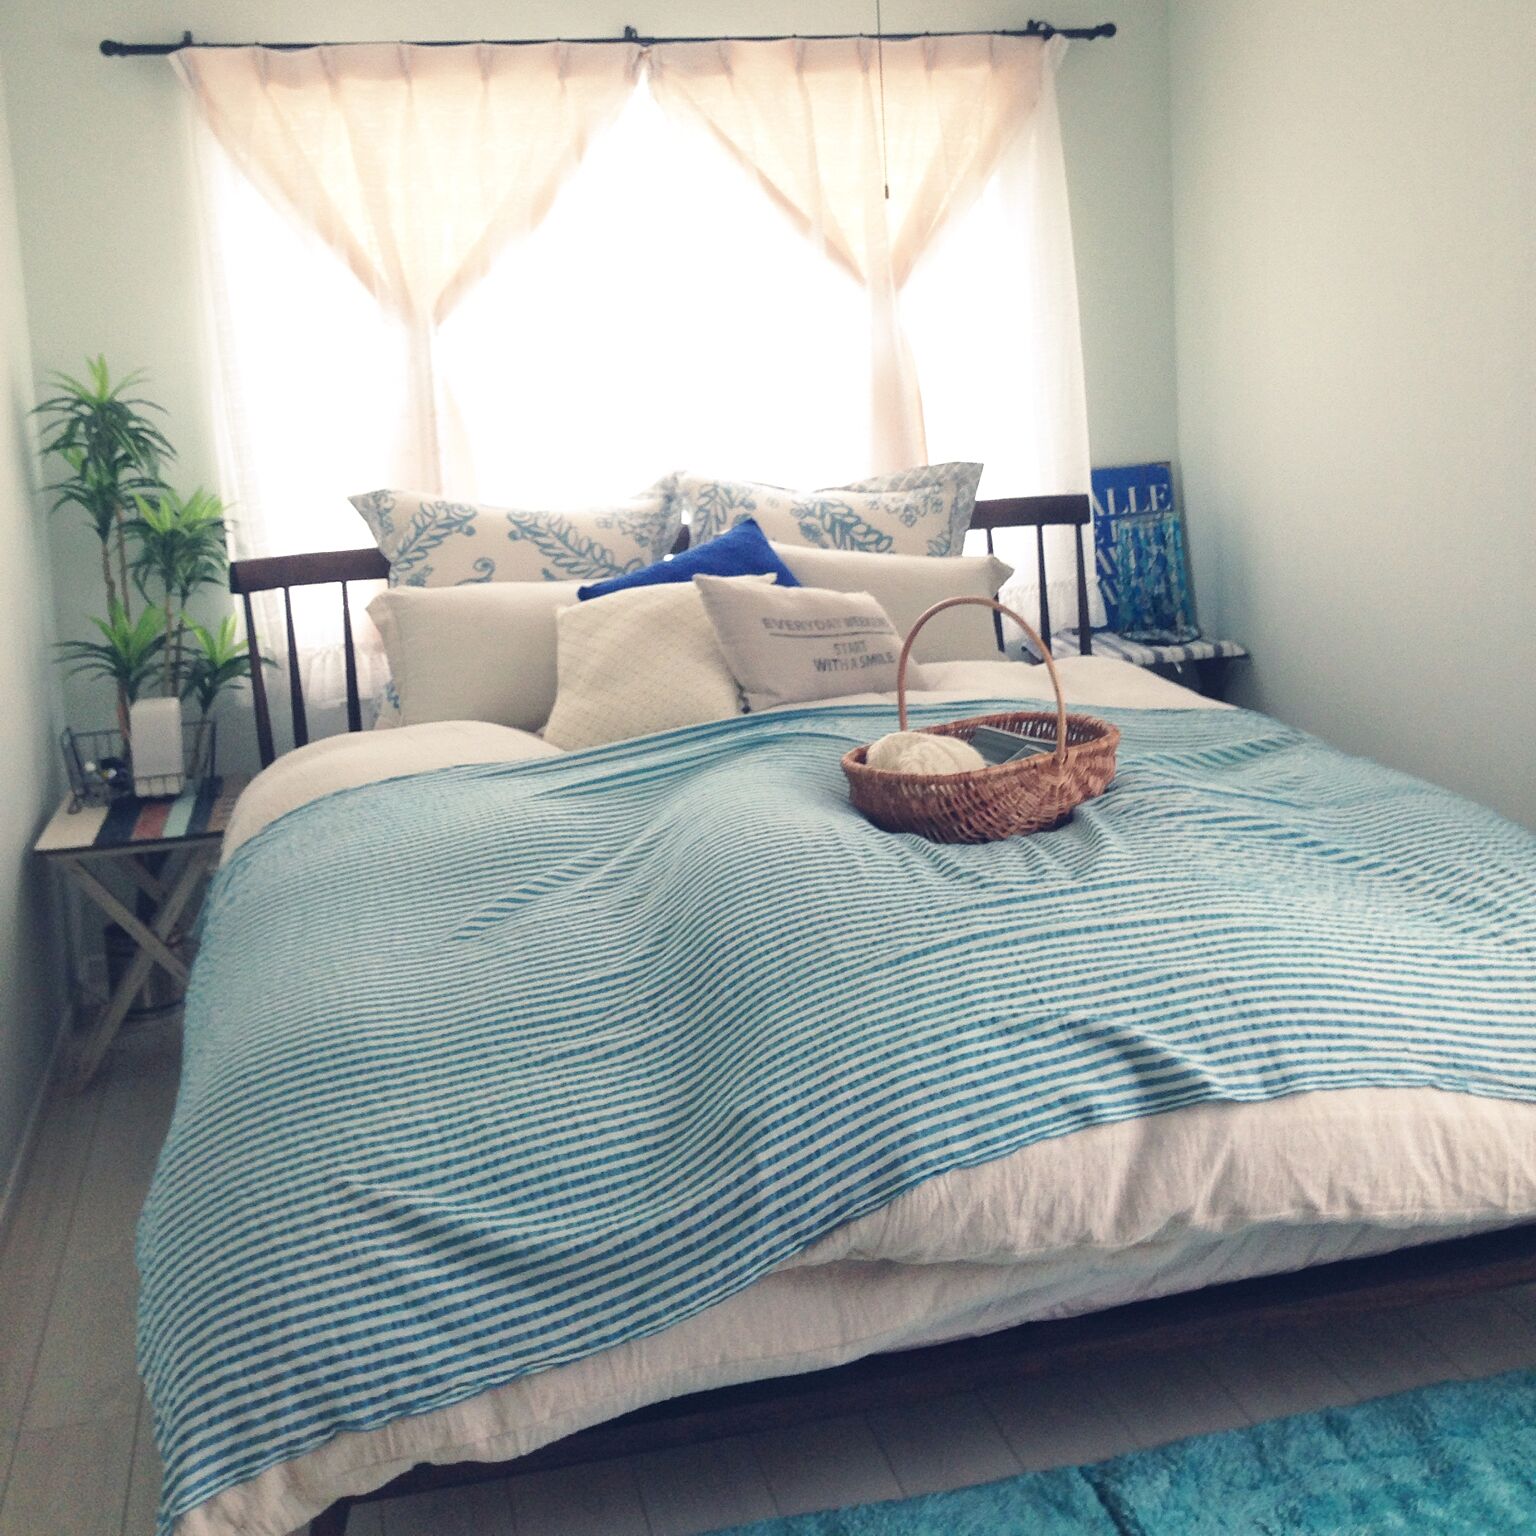 寝心地 デザイン文句なし 快適すぎるニトリのベッド Roomclip Mag 暮らしとインテリアのwebマガジン